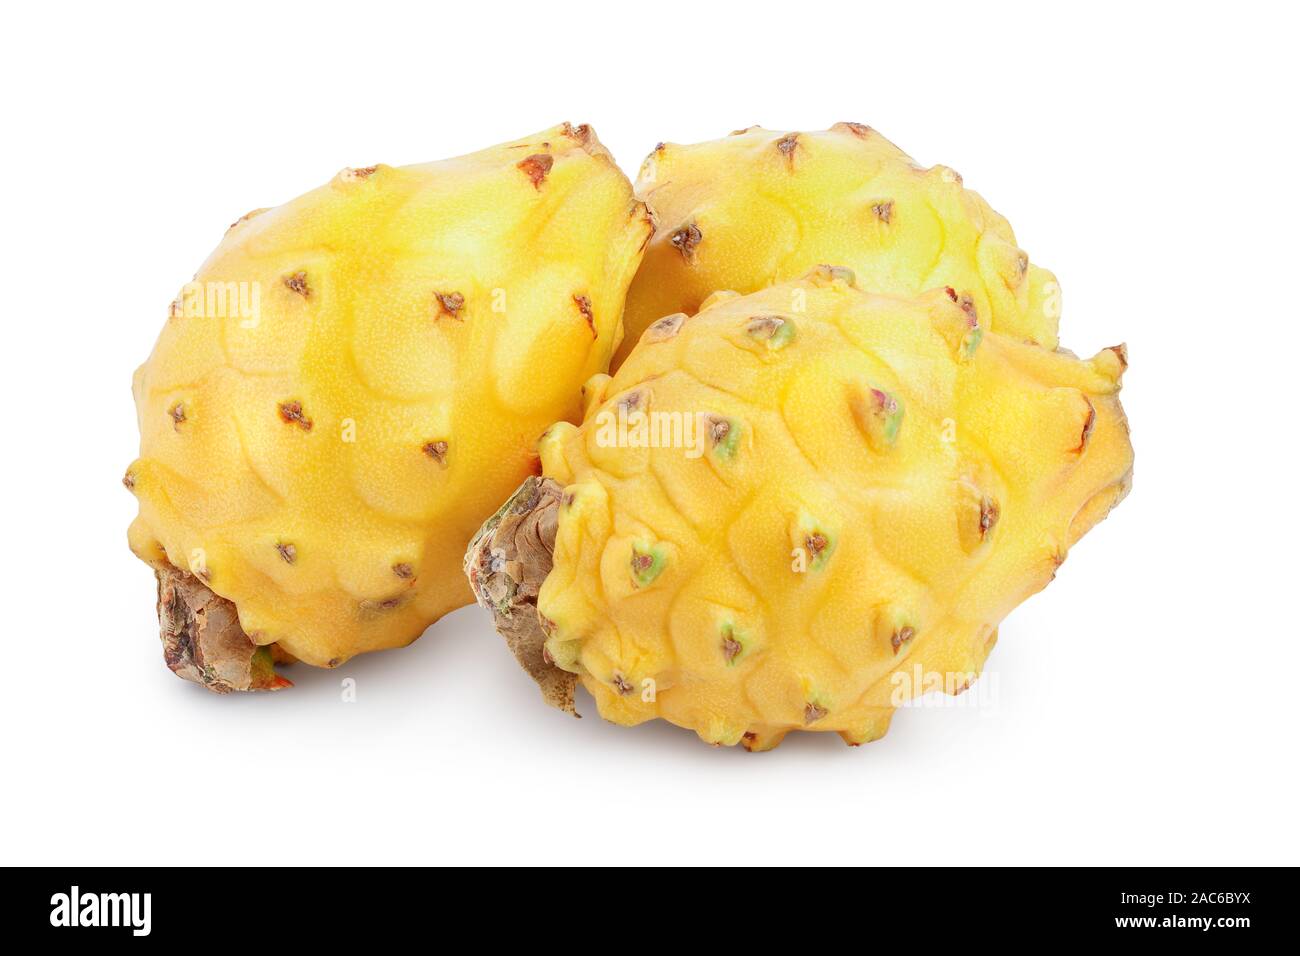 Reif Dragon Obst, pitaya oder Pitahaya Gelb auf weißem Hintergrund, Obst  gesund Konzept Stockfotografie - Alamy